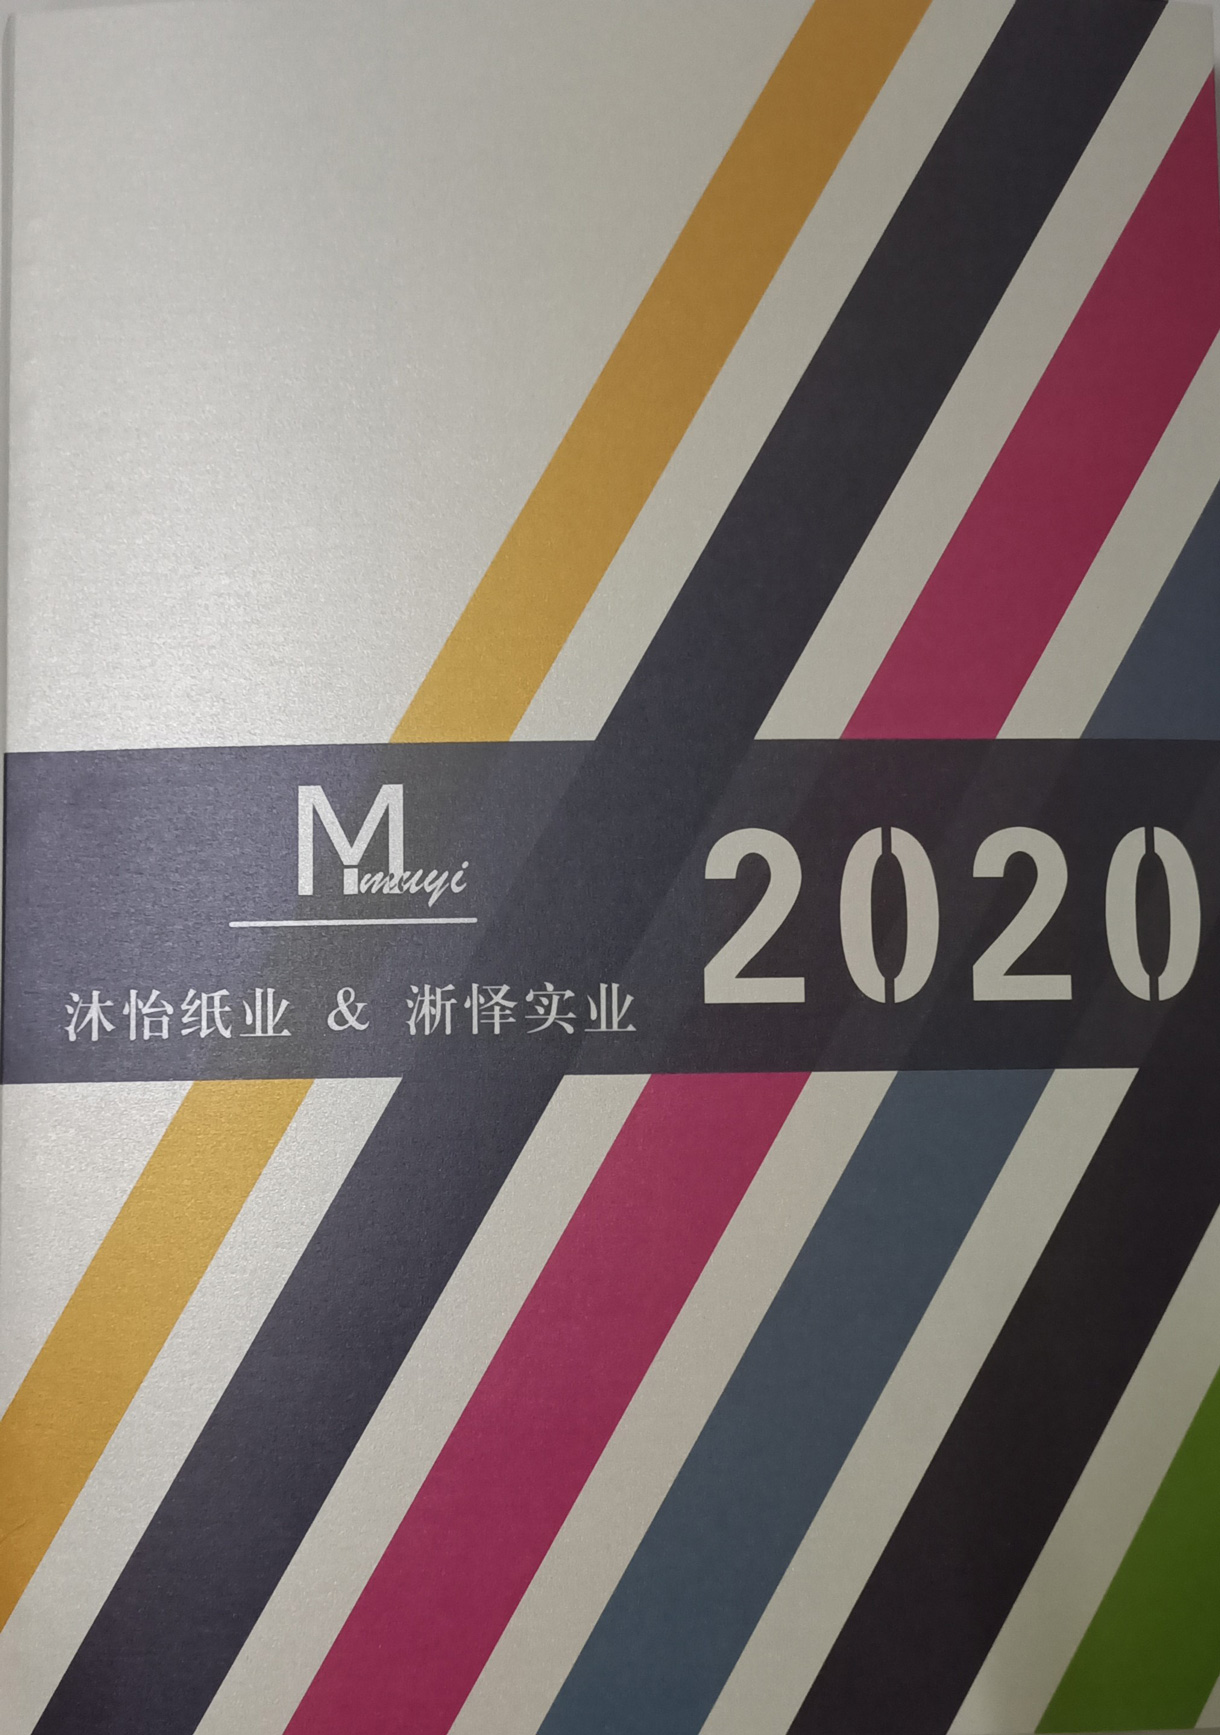 上海沐怡纸业有限公司将亮相CIPPME上海包装展